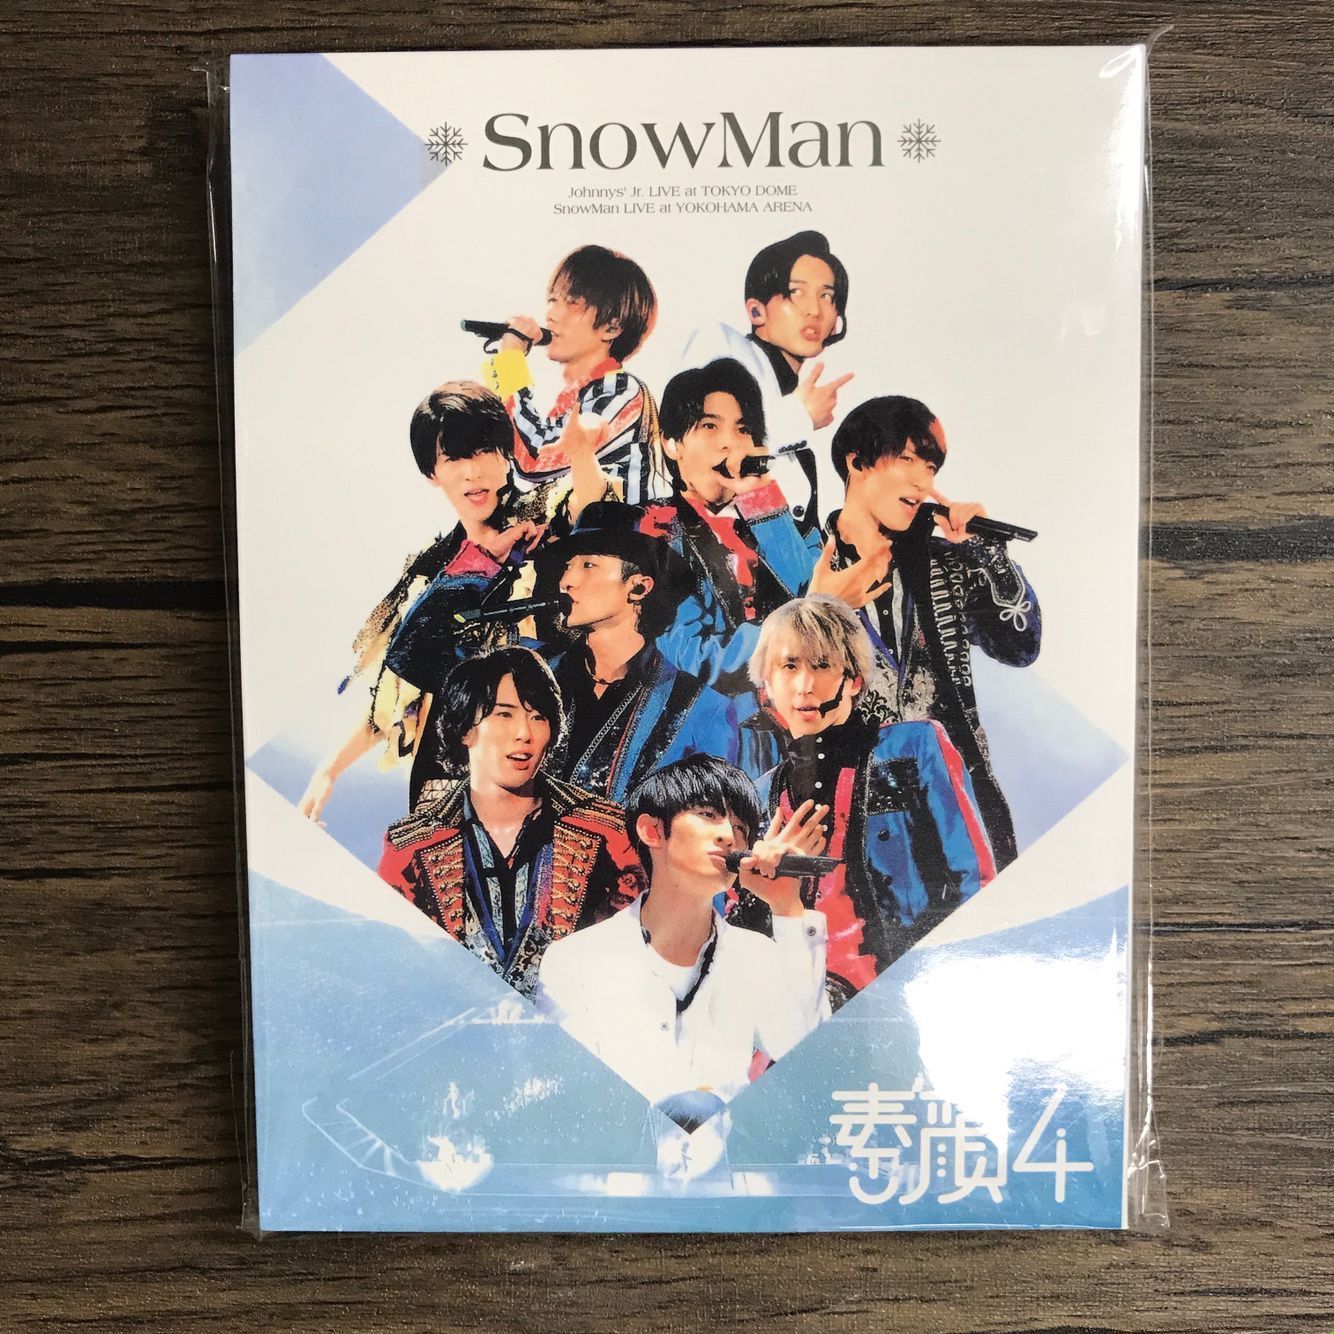 素顔4 SnowMan盤 - ミュージック